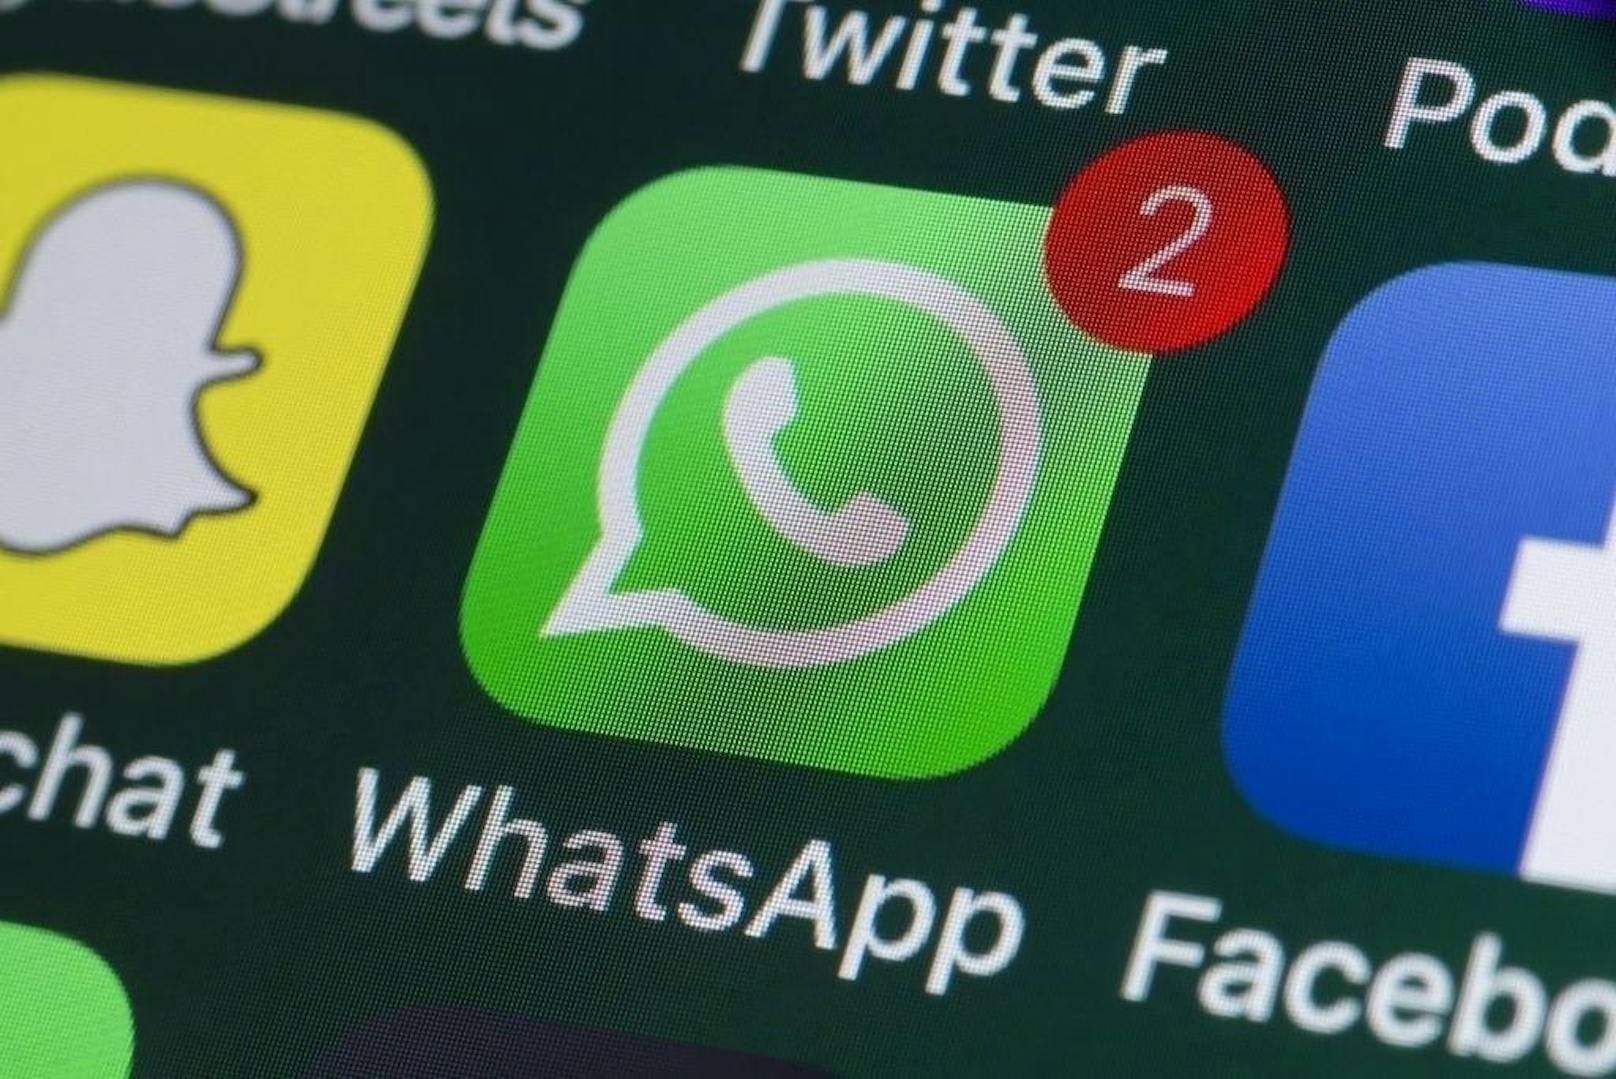 WhatsApp schränkt die Weiterleiten-Funktion ein. Künftig sollen Nachrichten nur noch an fünf andere Nutzer weitergeleitet werden können.